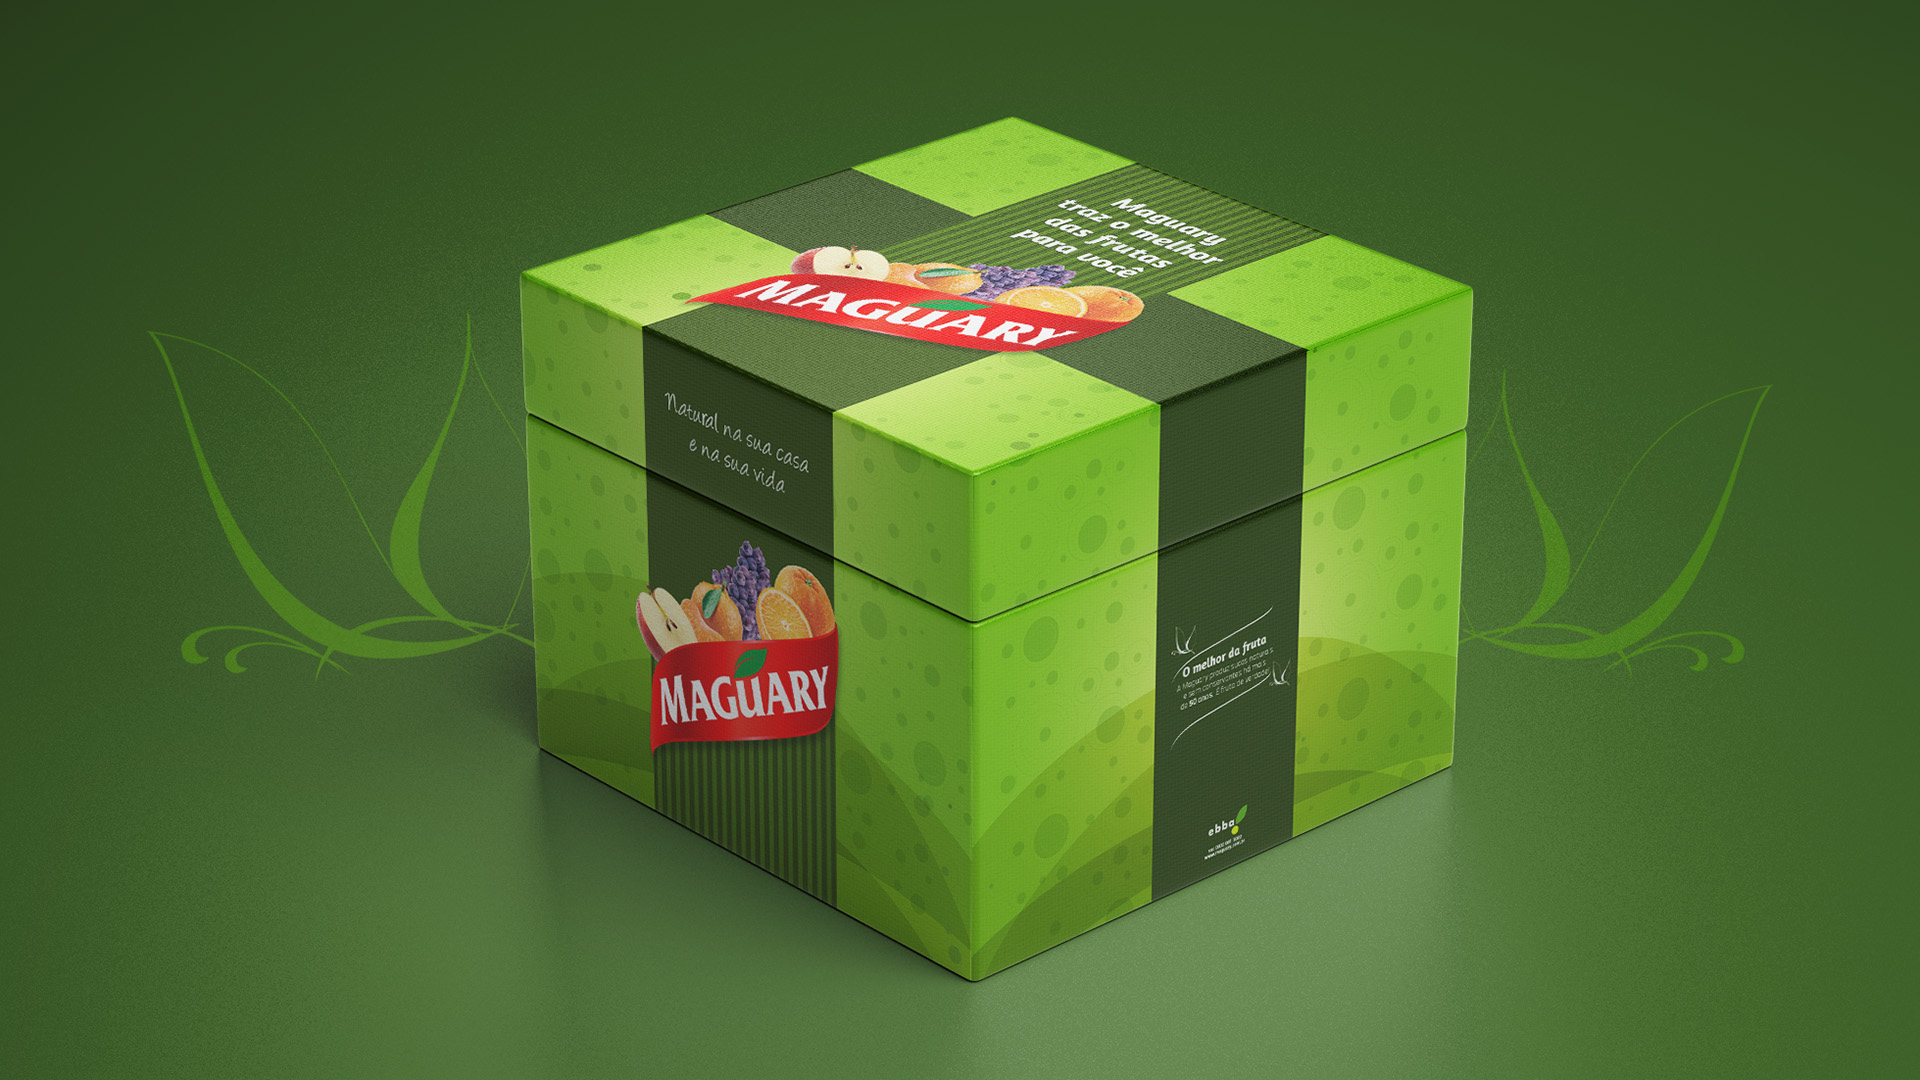 Imagem da caixa do press kit de lançamento de produtos Maguary com key visual aplicado.